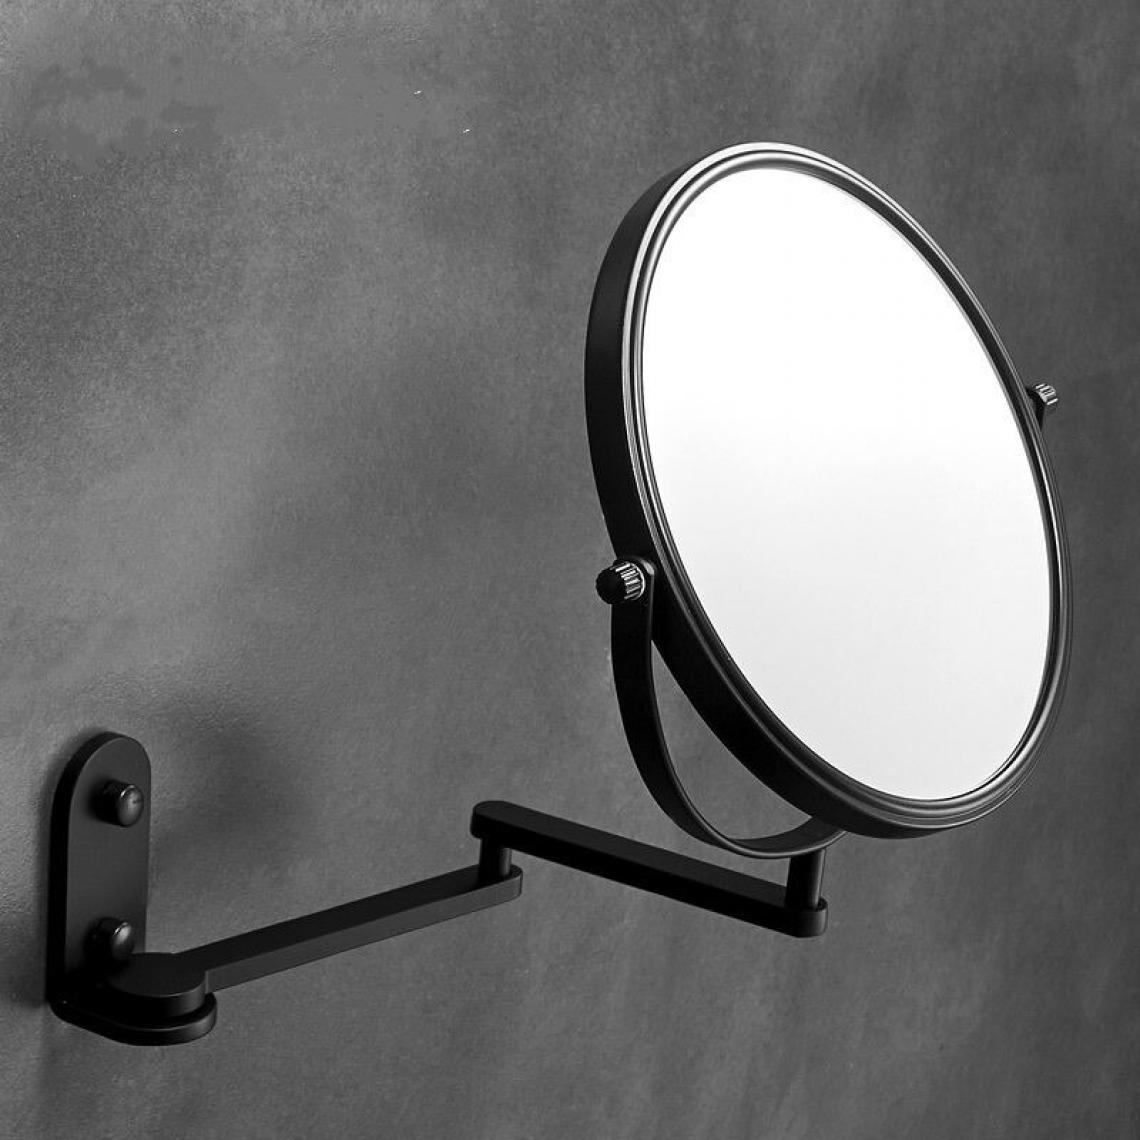 Universal - Pas d'emballage, miroir double face, toilettes transfrontalières, loupe, verre, miroir de maquillage, salle de bains, suspension au mur, hôtel, miroir de beauté rétractable et pliable.(Le noir) - Miroir de salle de bain